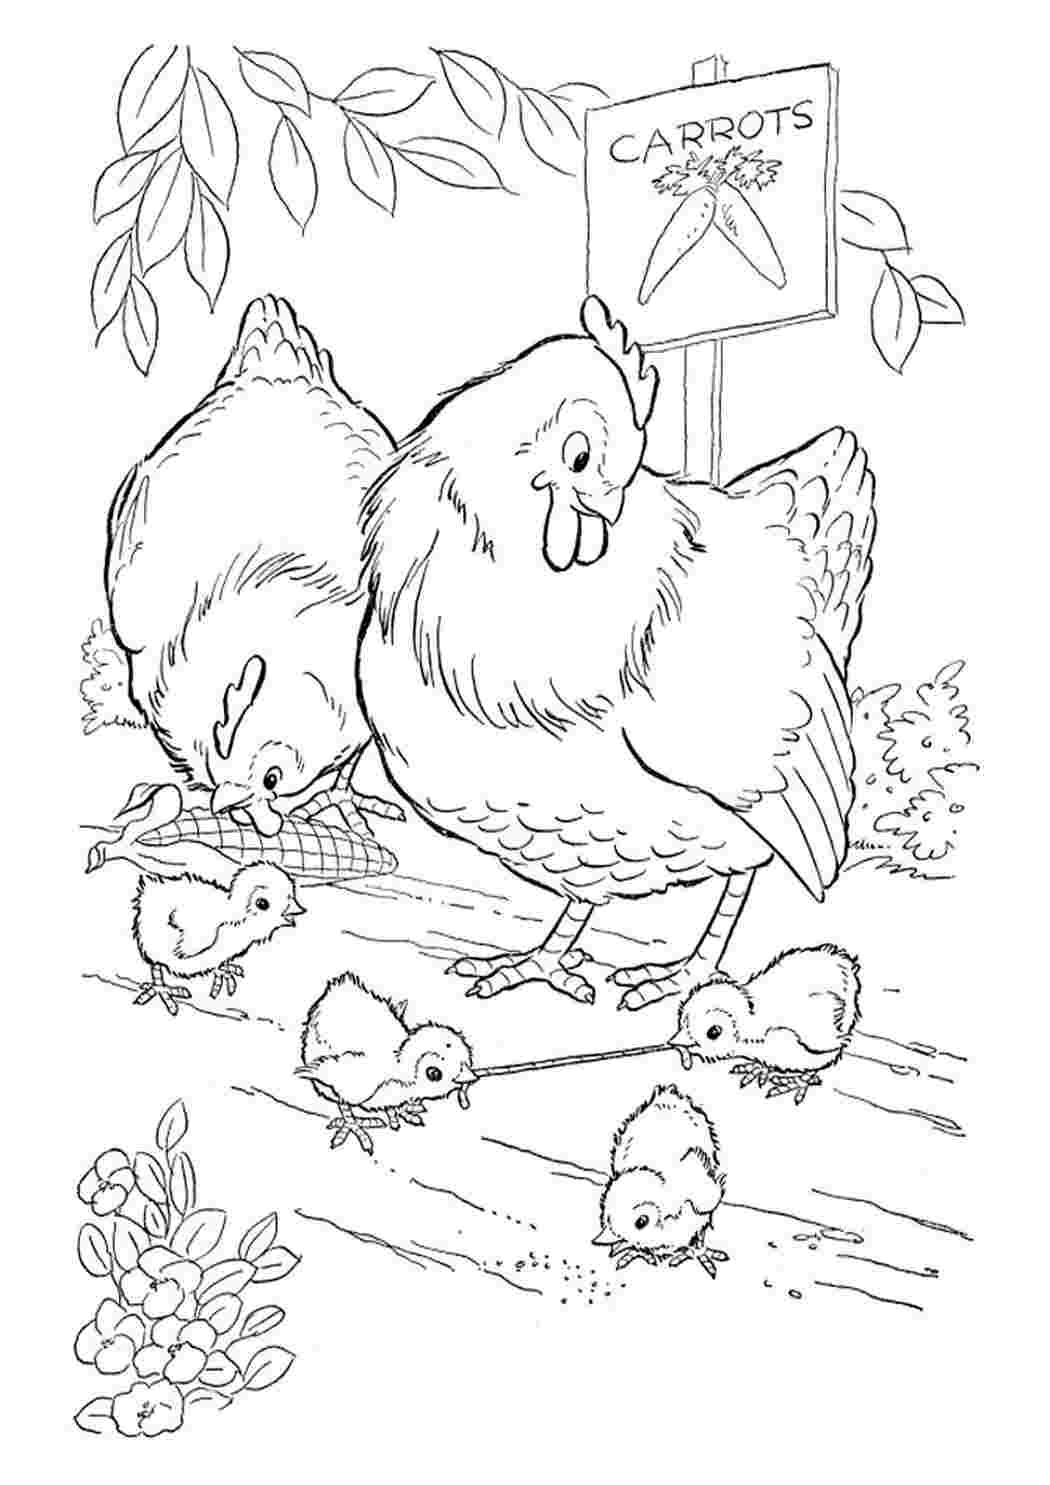 Курица с цыплятами раскраска для детей